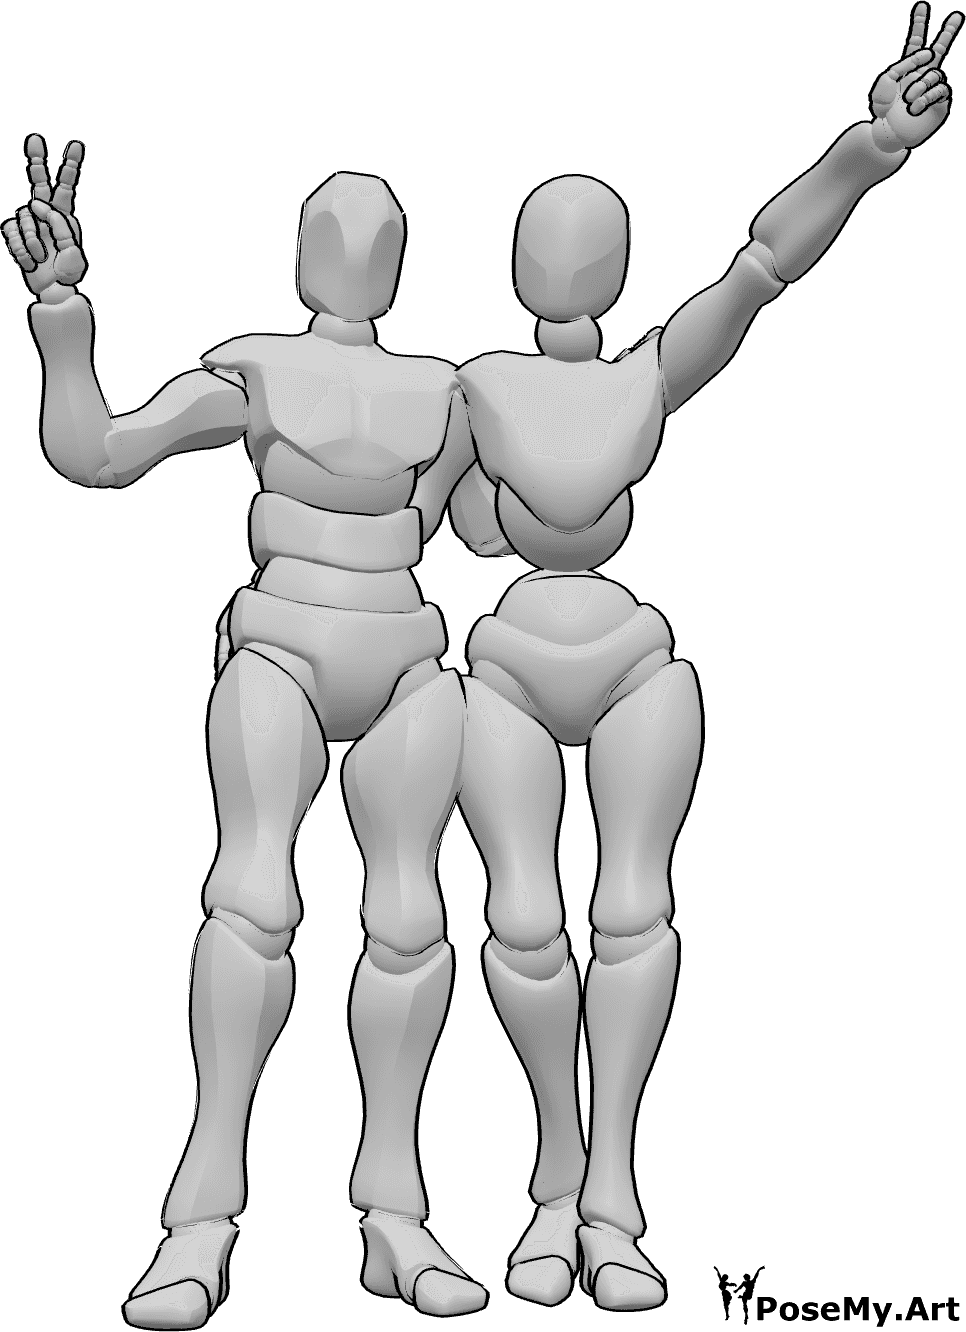 Posen-Referenz- Weibliche männliche Friedenszeichen-Pose - Frau und Mann stehen, umarmen sich und zeigen das Friedenszeichen